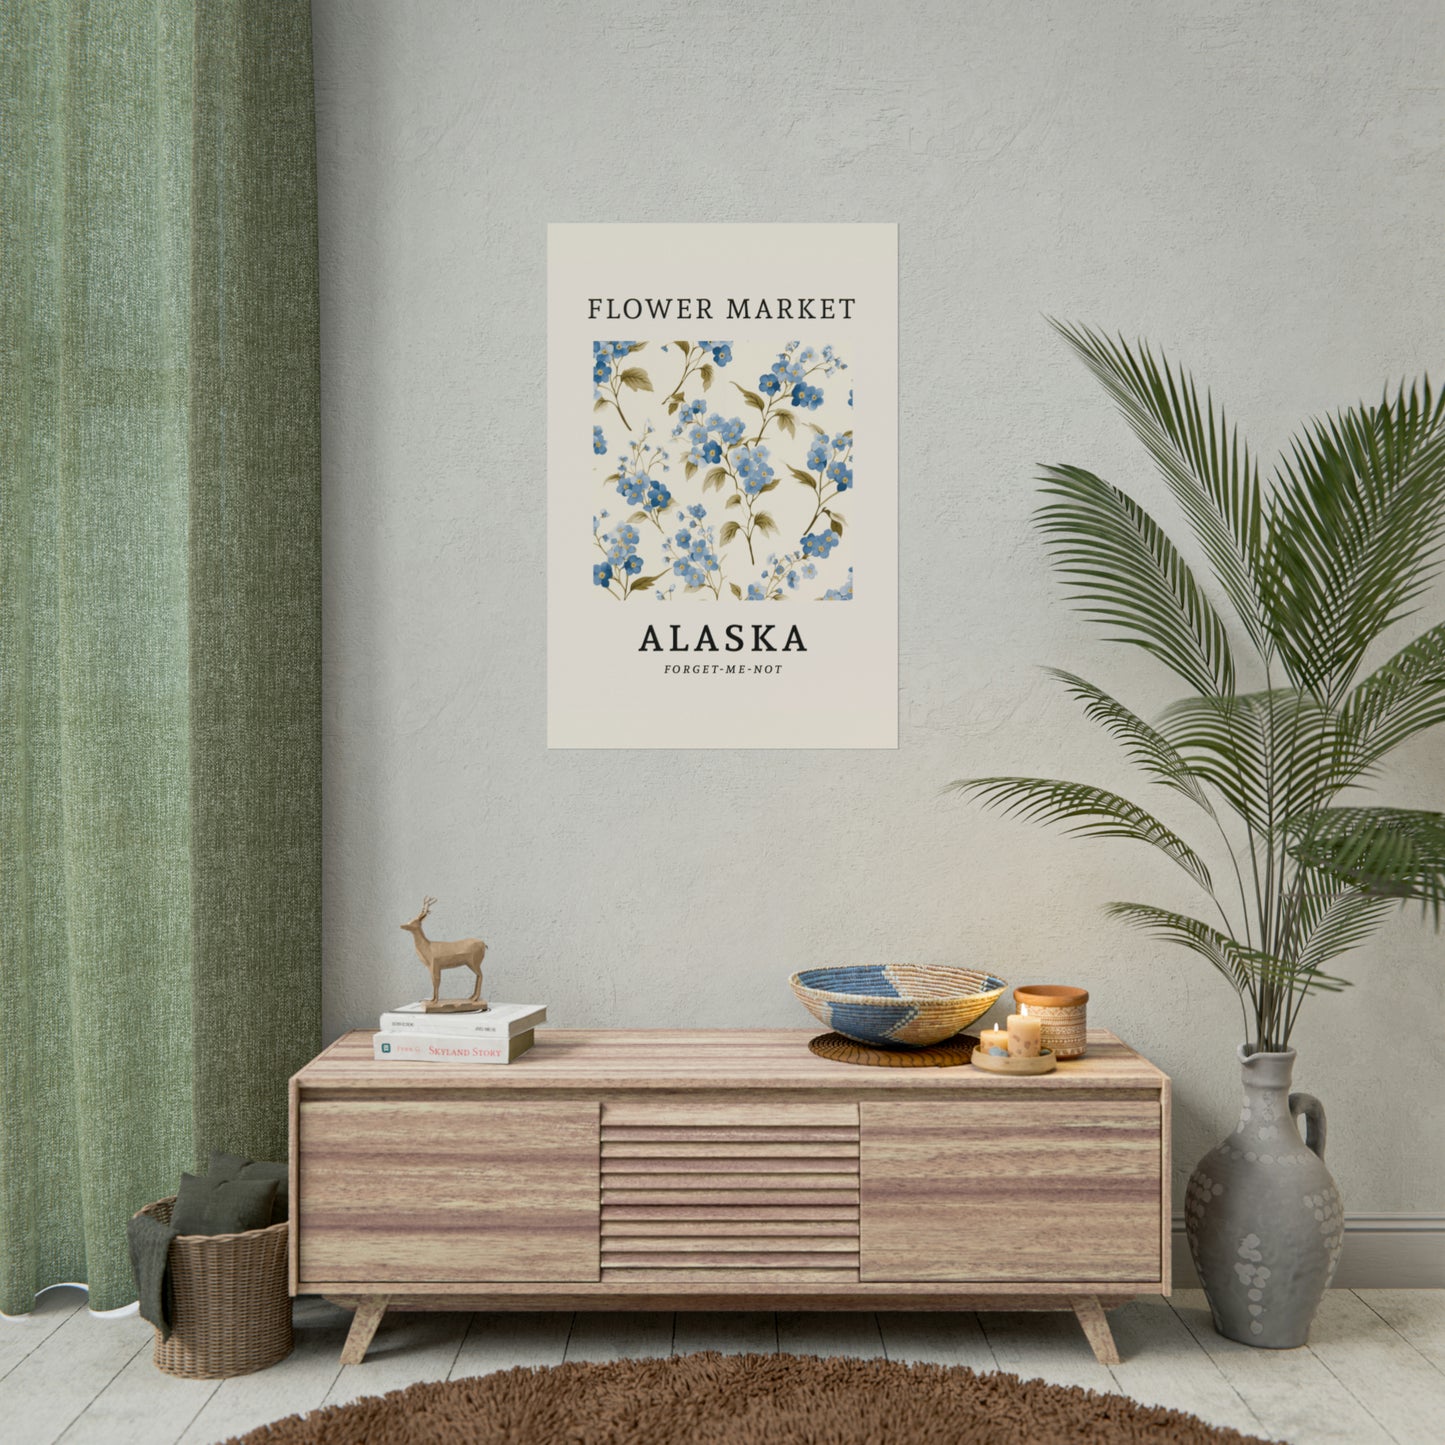 ALASKA FLOWER MARKET Poster Forget-me-not Flower Blooms